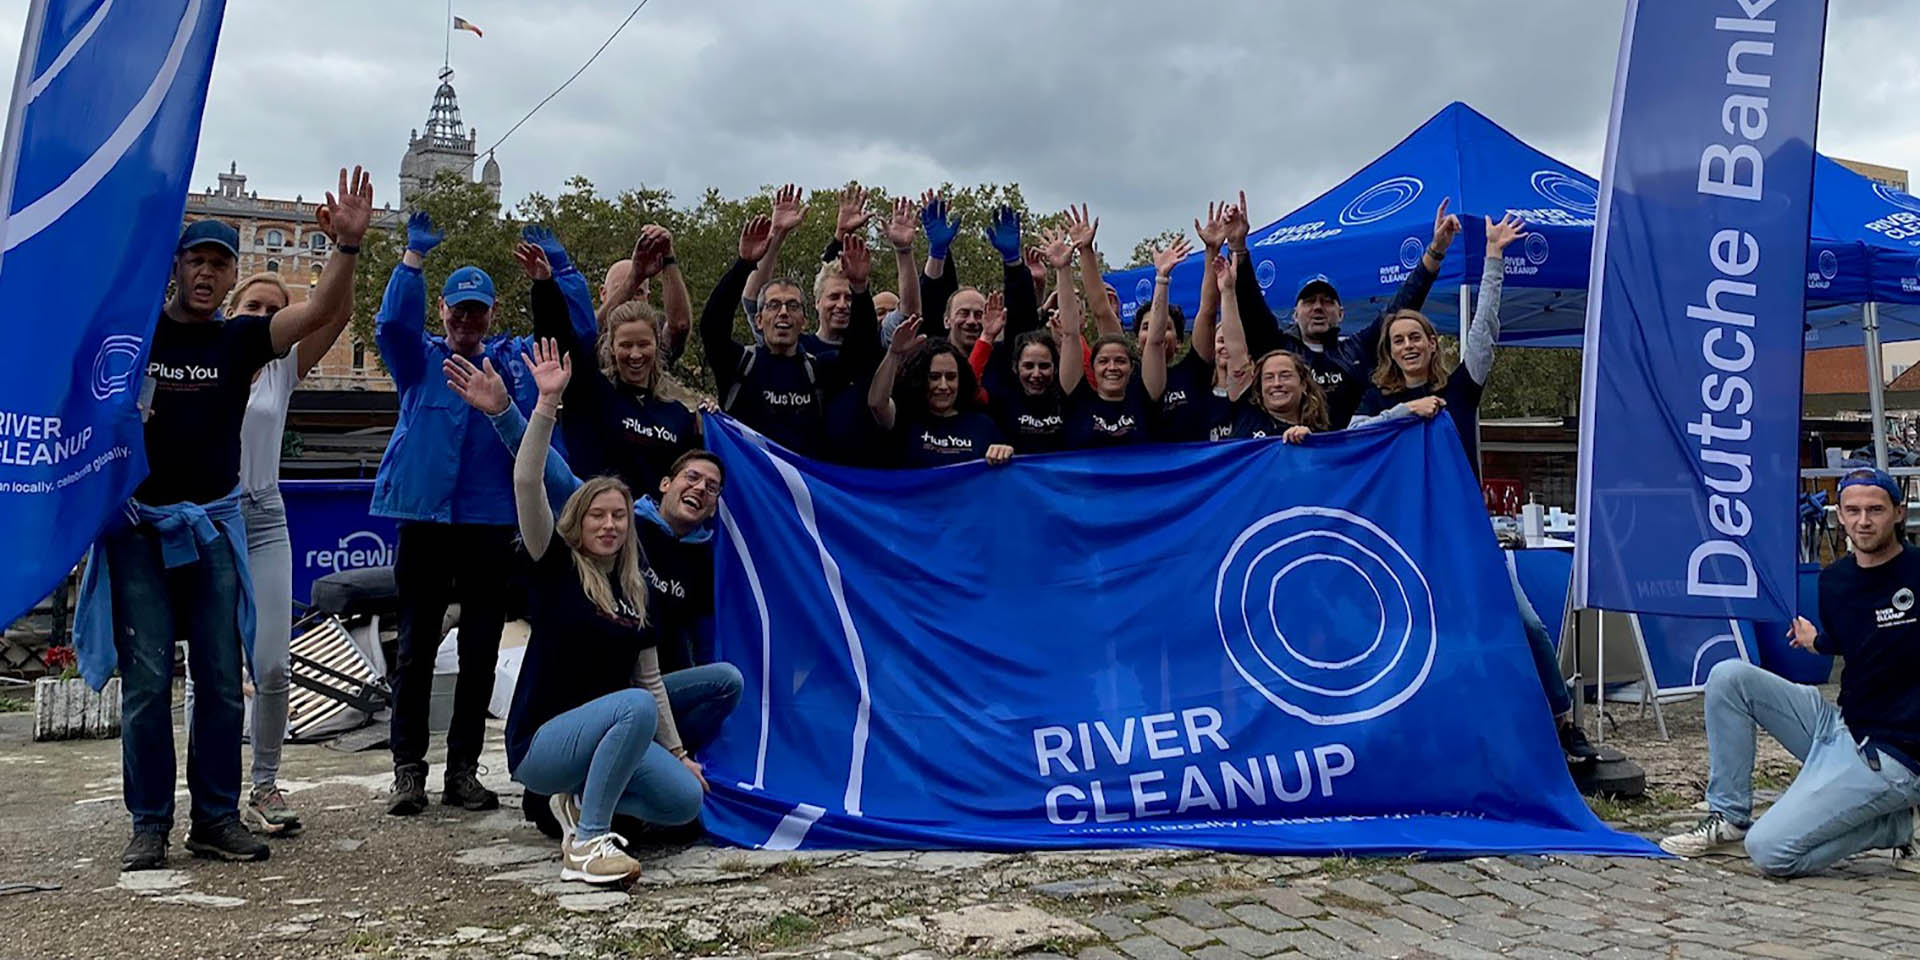 River Cleanup : Schoonmaakactie in Brussel